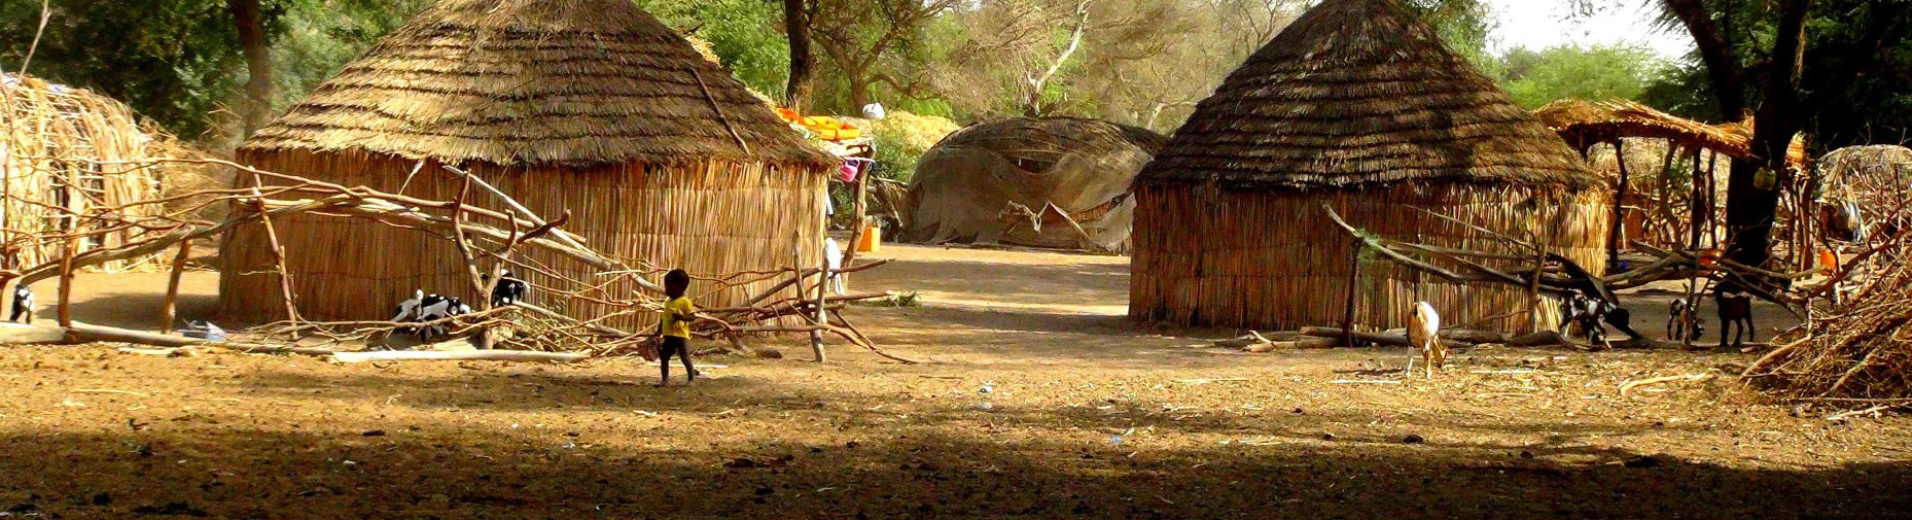 Enfant dans un village de brousse au Sénégal